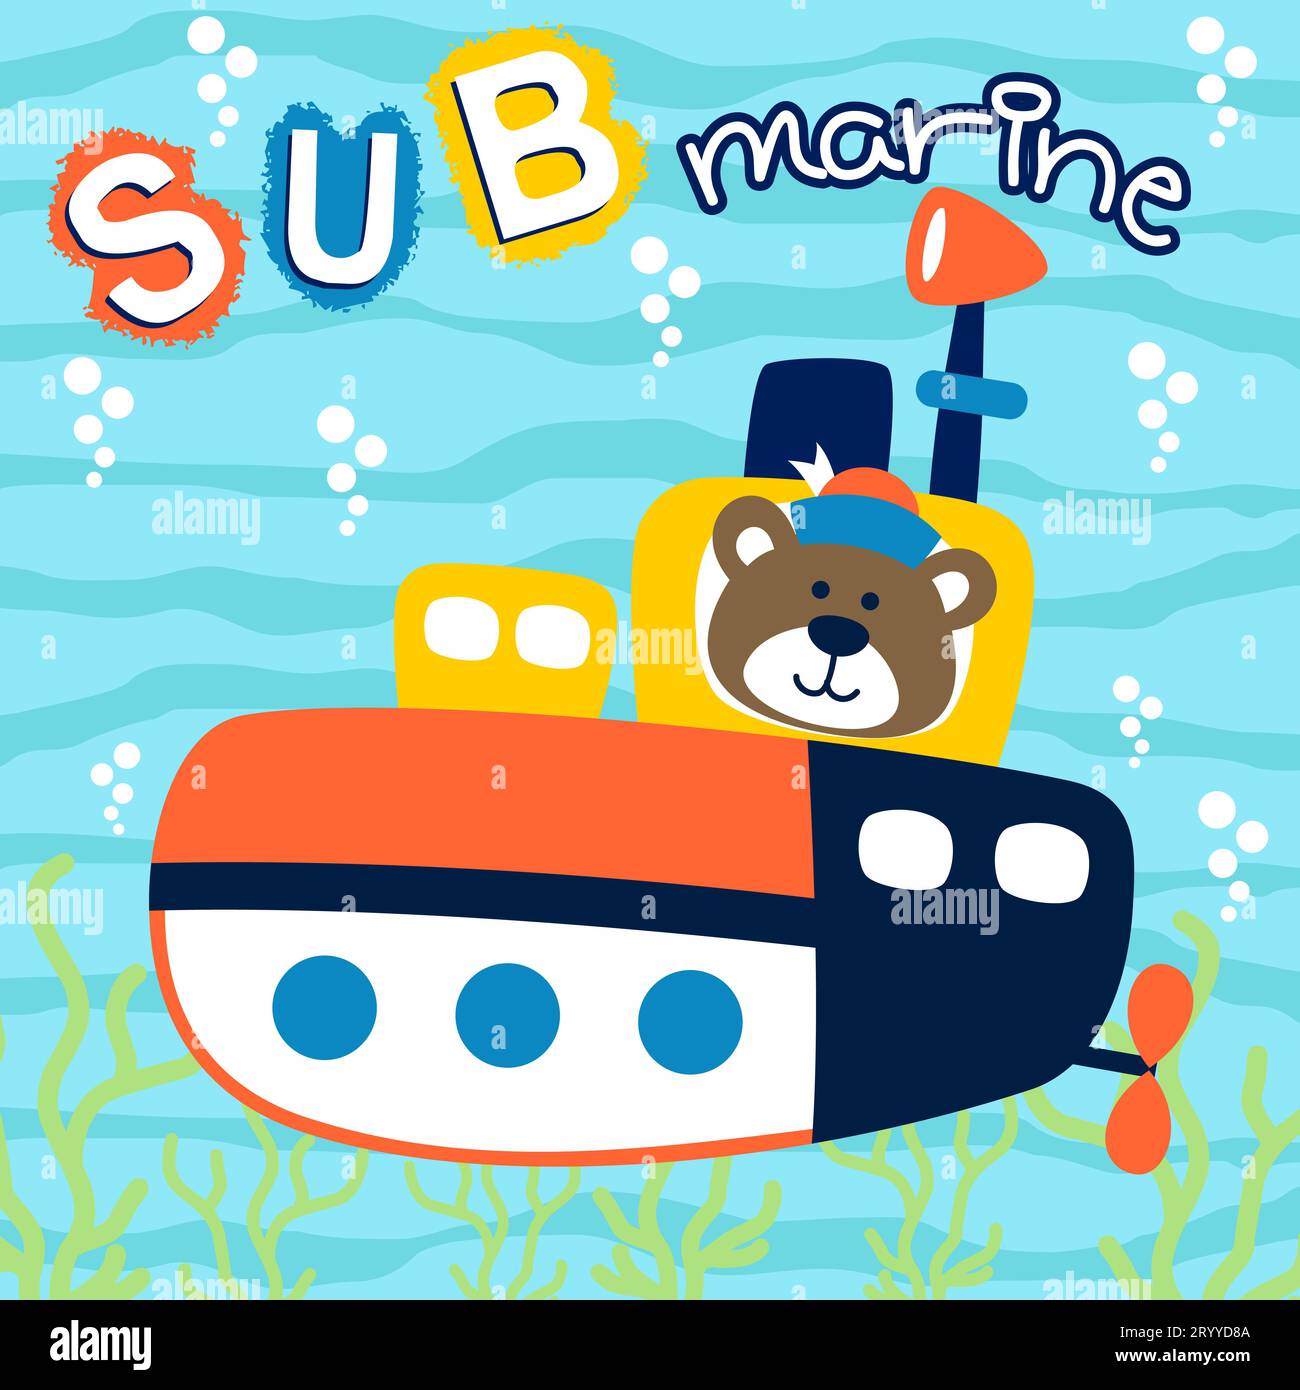 U-Boot mit niedlichem Bärensegler unter Wasser, Vektor-Zeichentrickillustration Stock Vektor